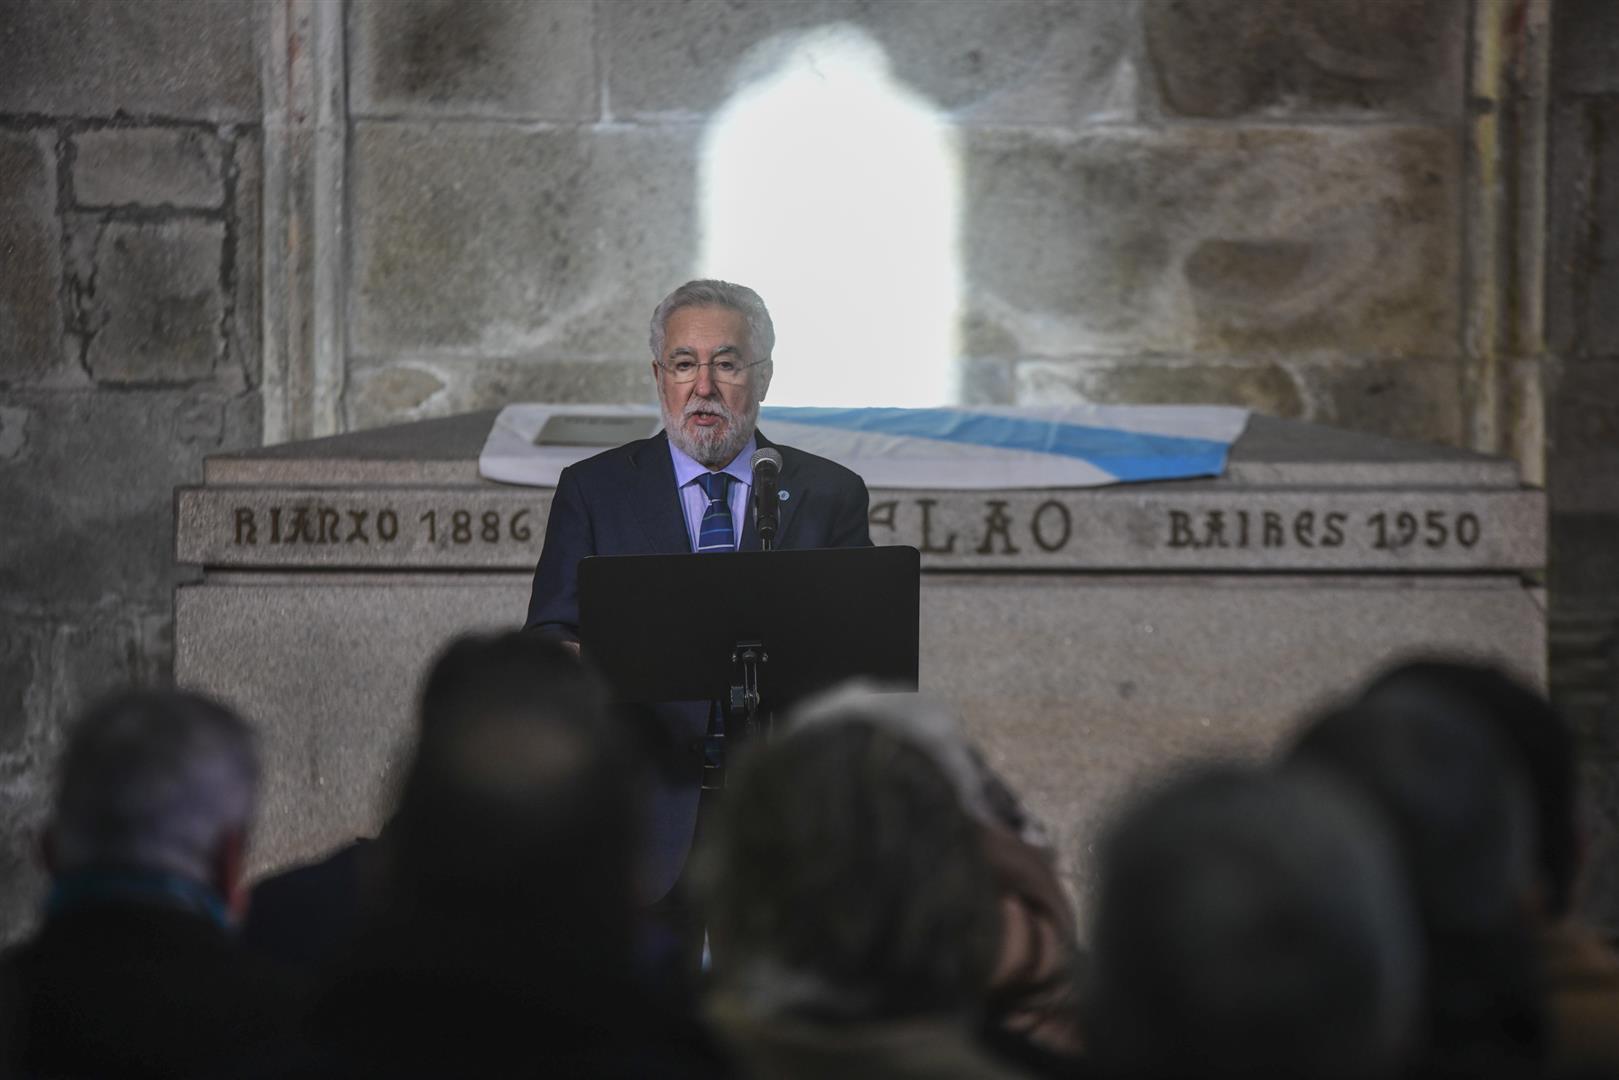 Foto da noticia: O Parlamento de Galicia organizará un acto de homenaxe a Castelao para recoñecer o seu papel como presidente do Consello de Galiza 